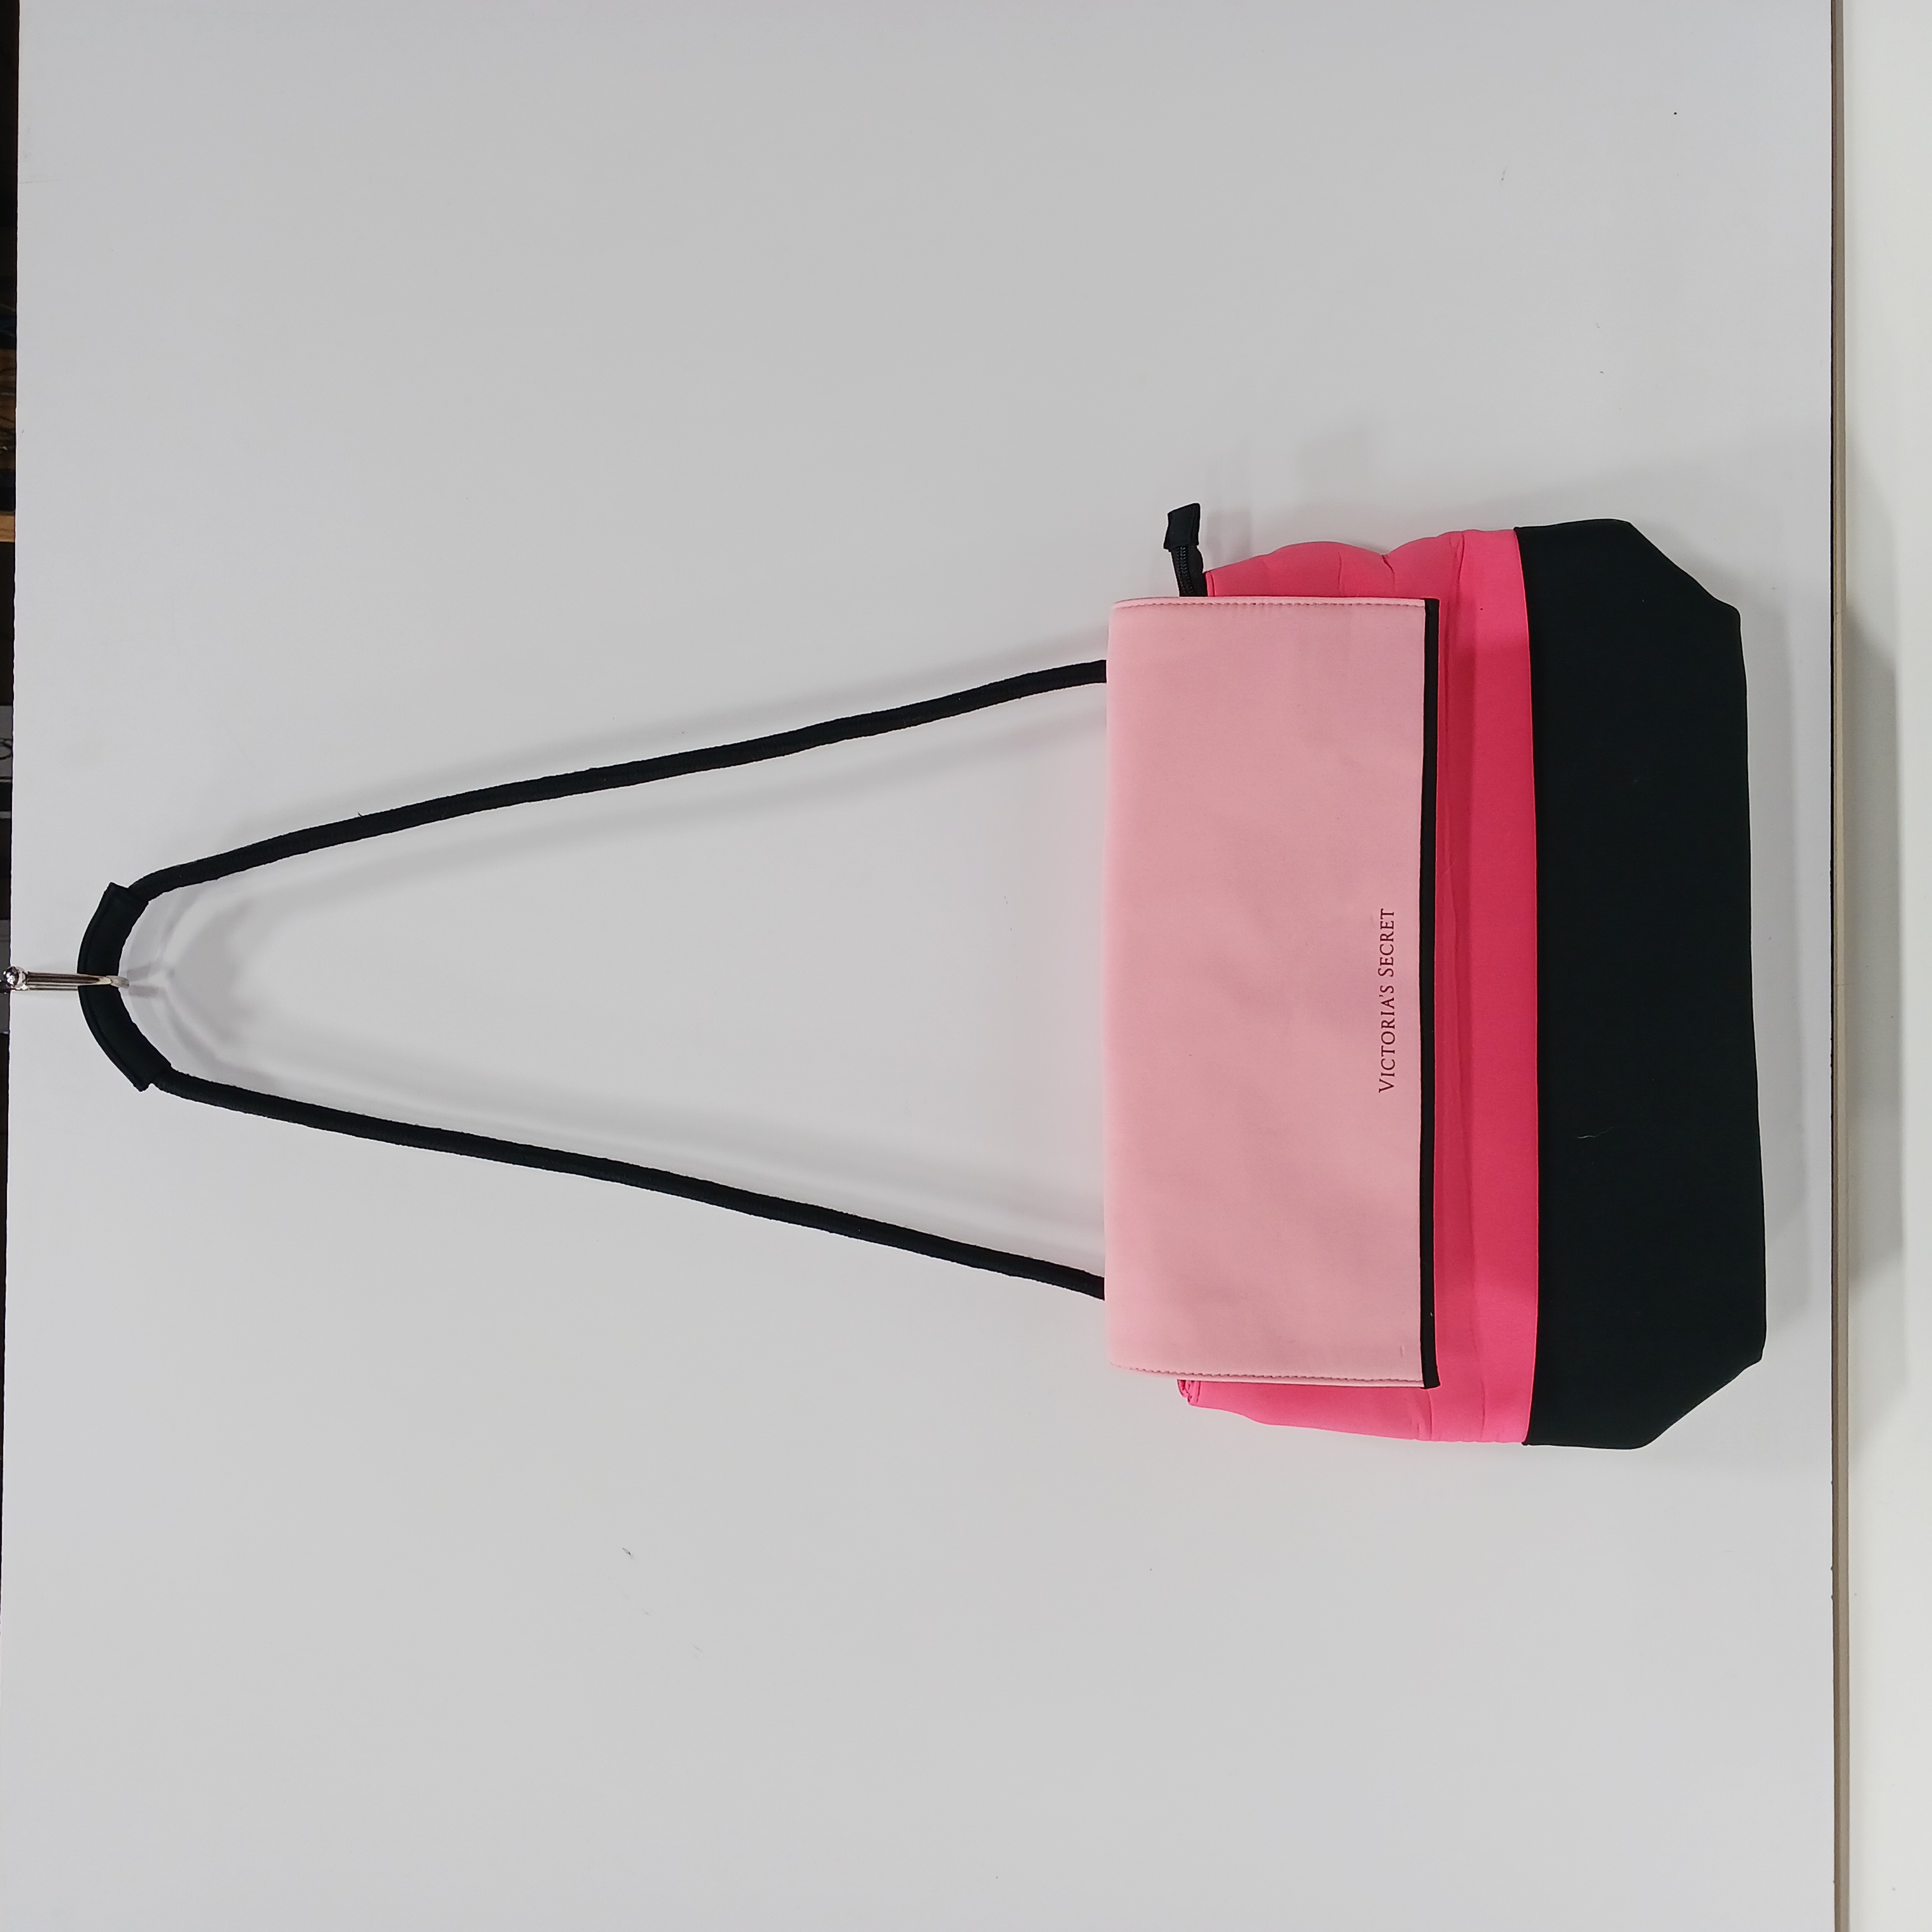 NEW** Original Victoria Secret Pink Tote insulated beach bag best